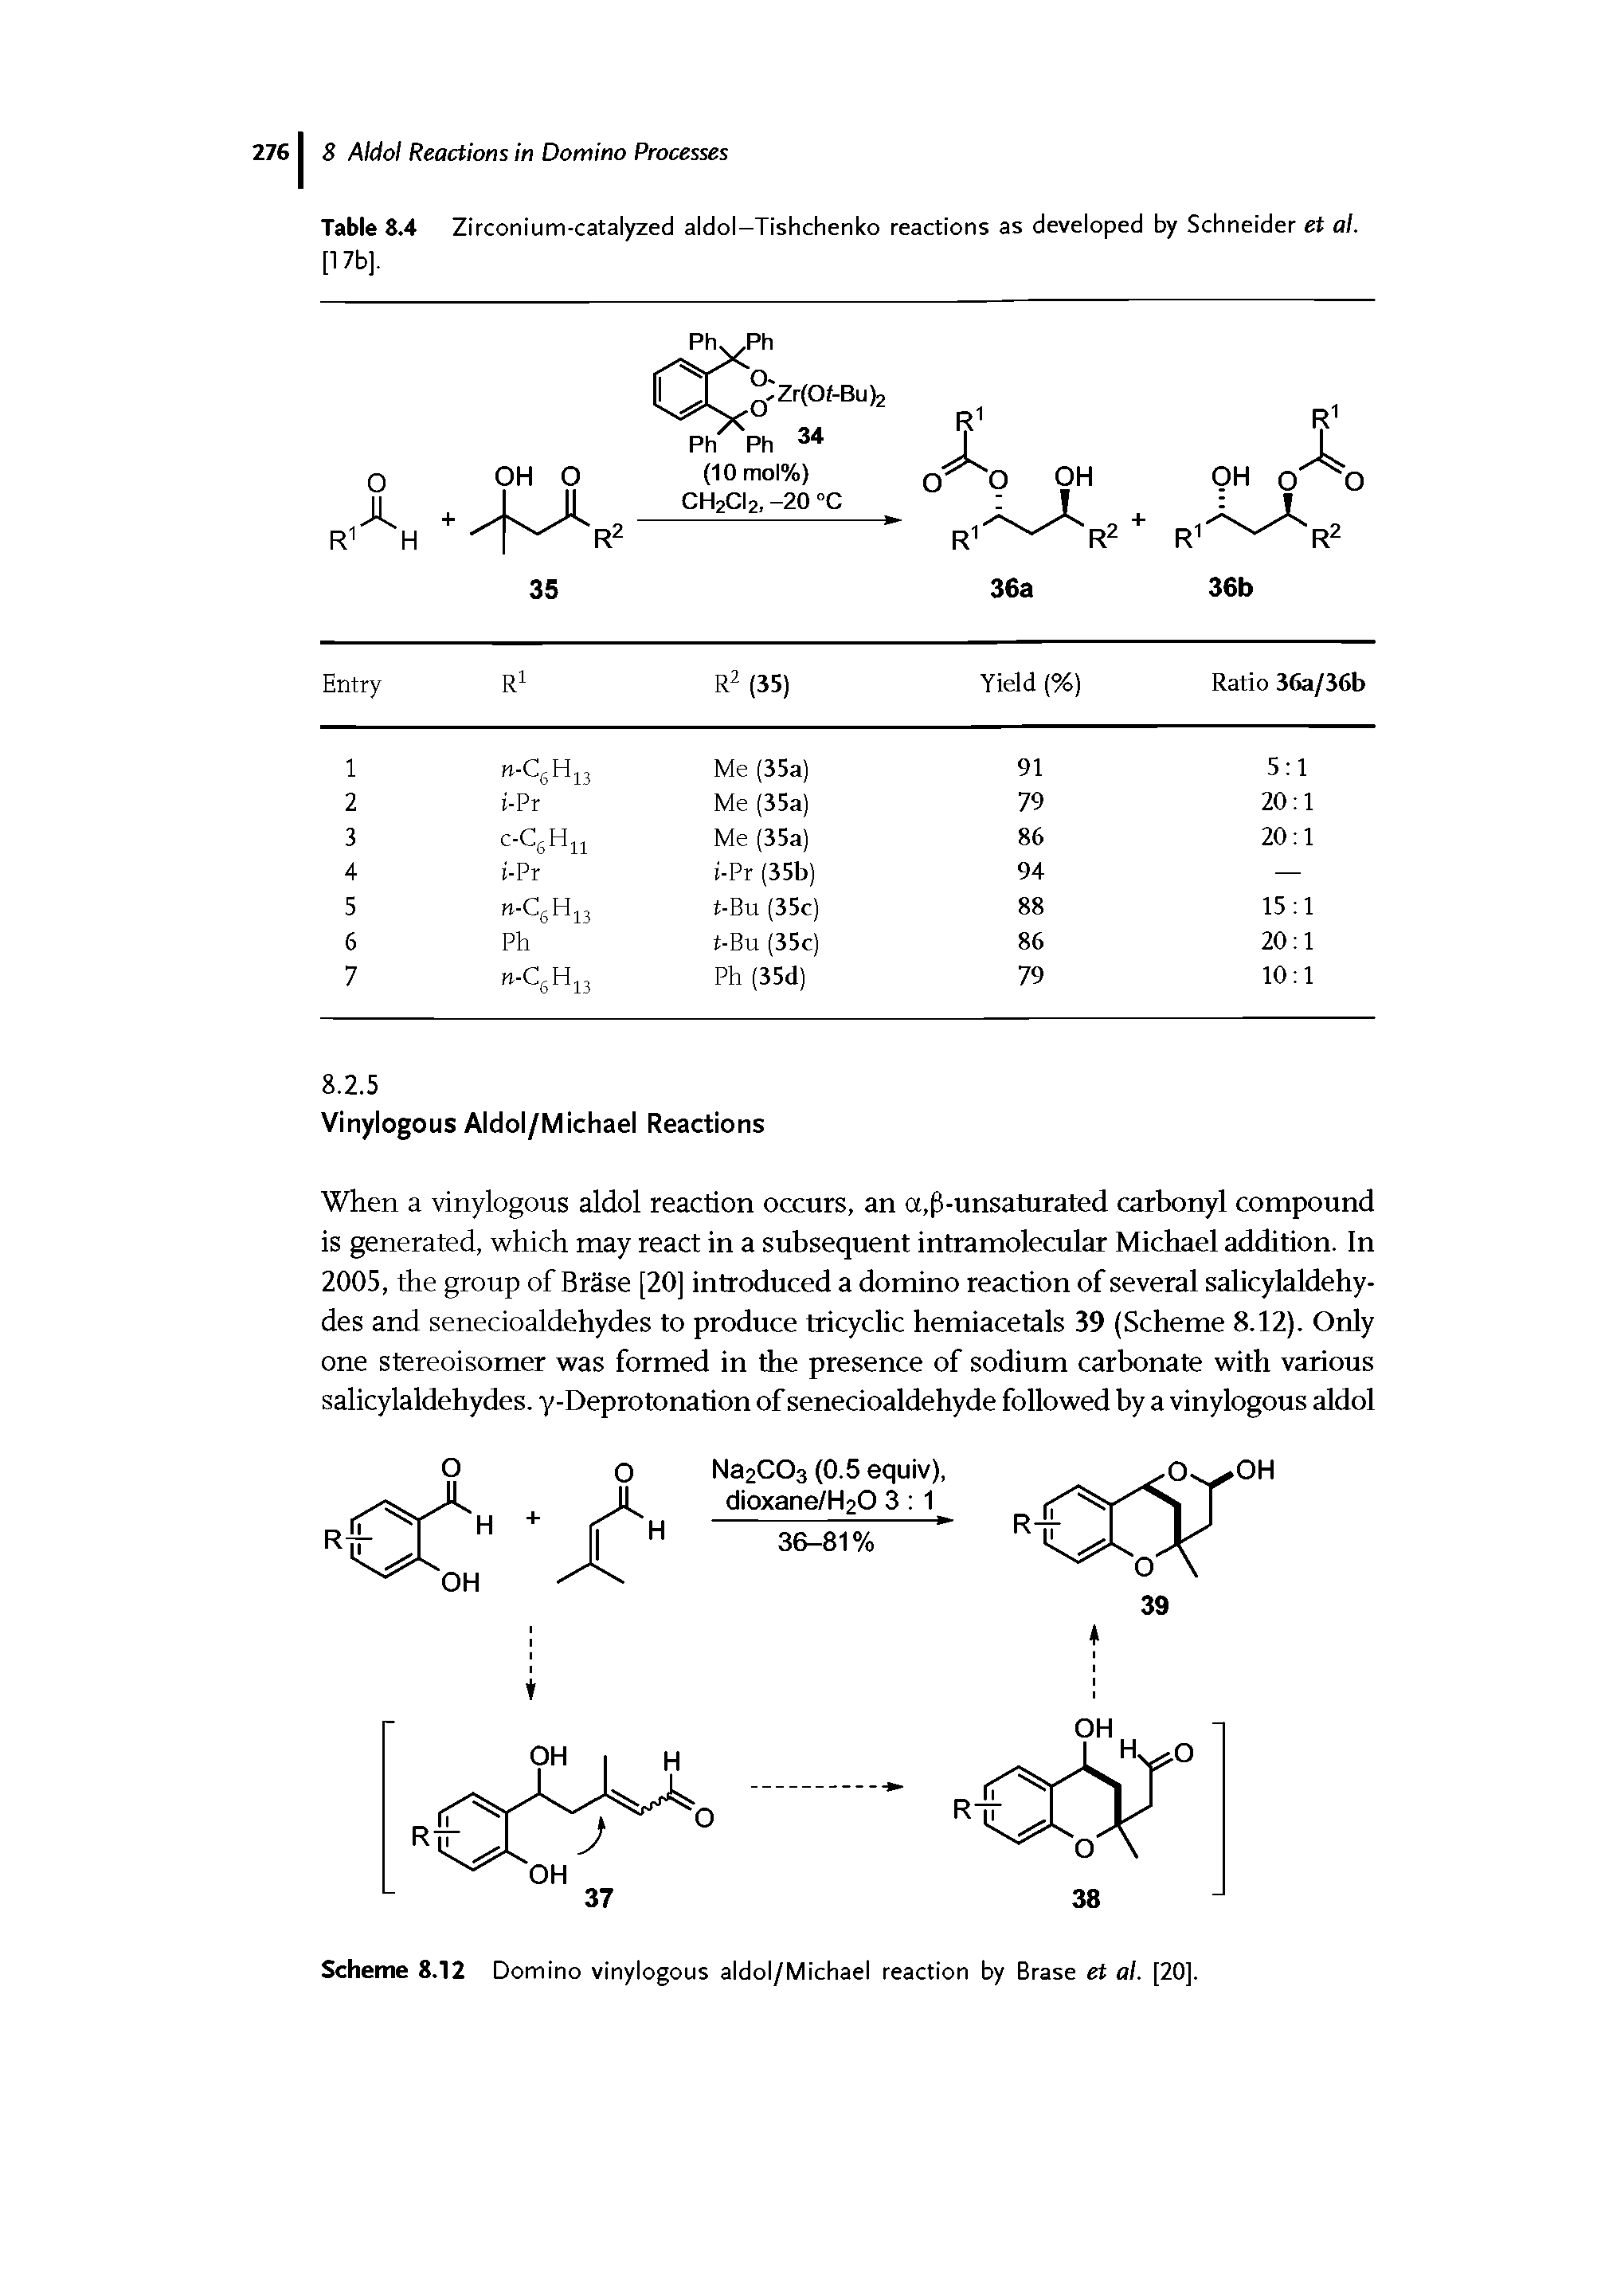 Scheme 8.12 Domino vinylogous aldol/Michael reaction by Brase et al. [20].